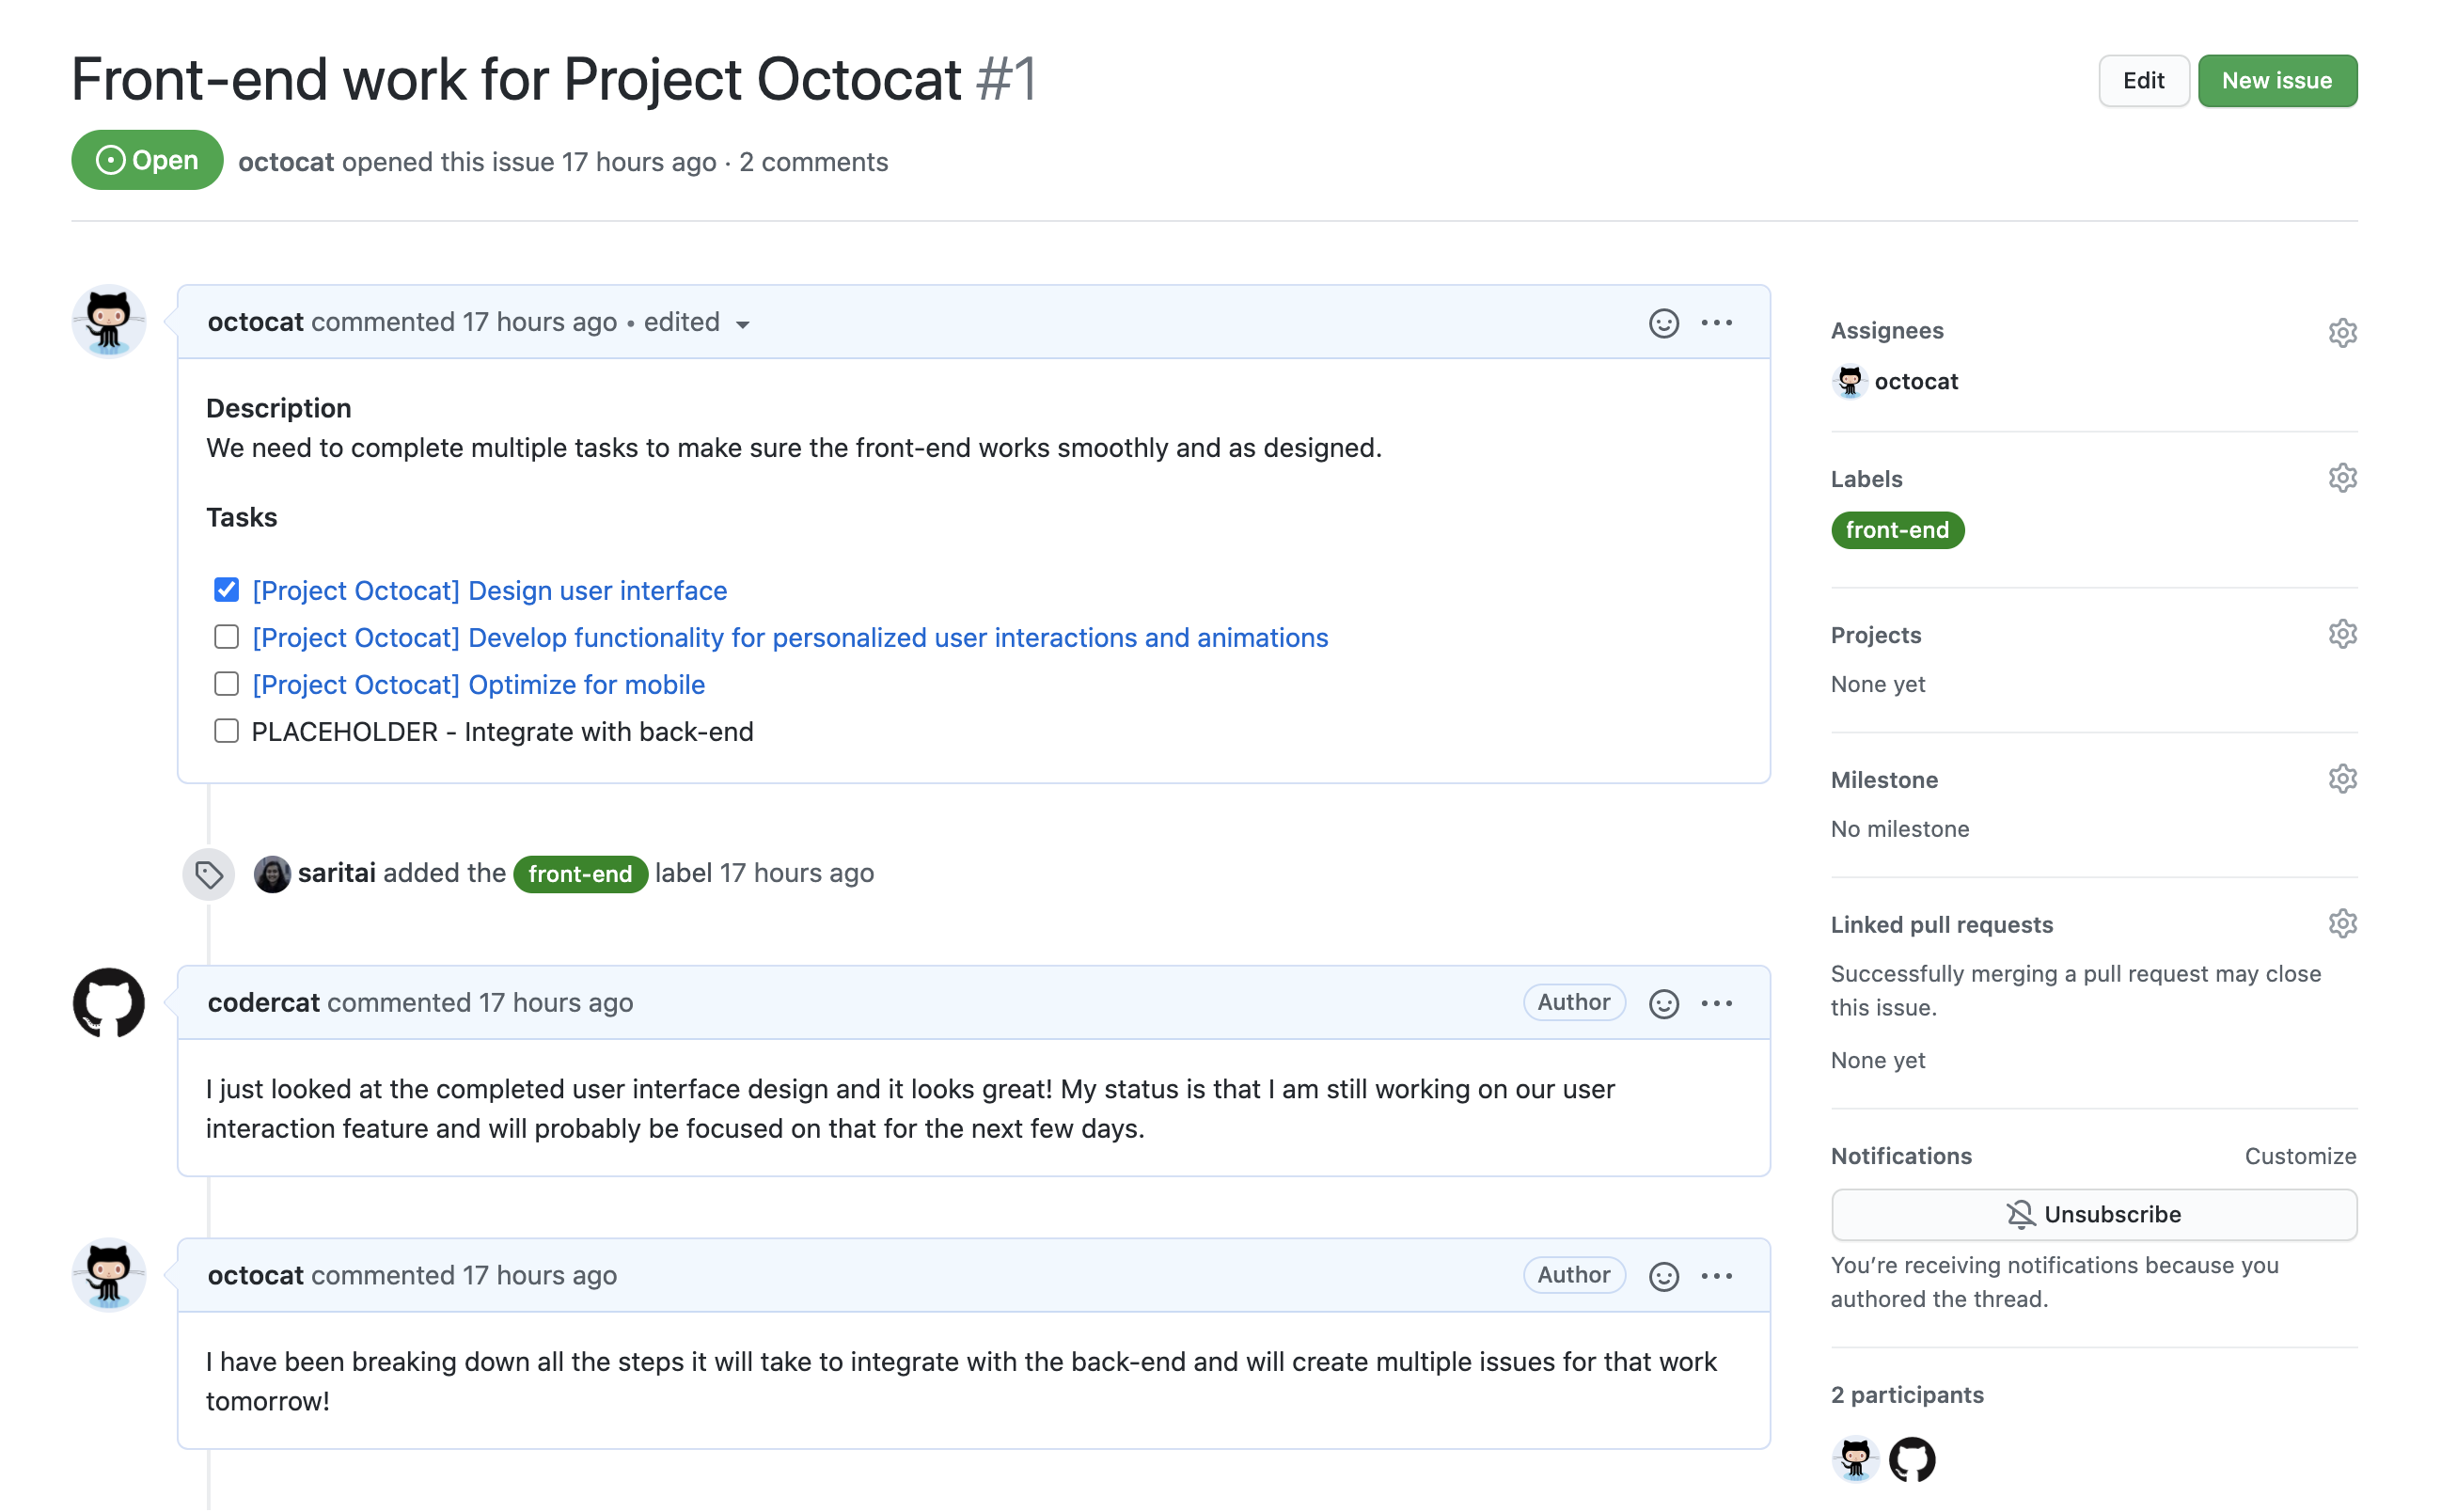 Captura de tela de um problema chamado "Trabalho de front-end do Projeto Octocat". Os comentários de @codercat e @octocat fornecem atualizações de status sobre o trabalho.